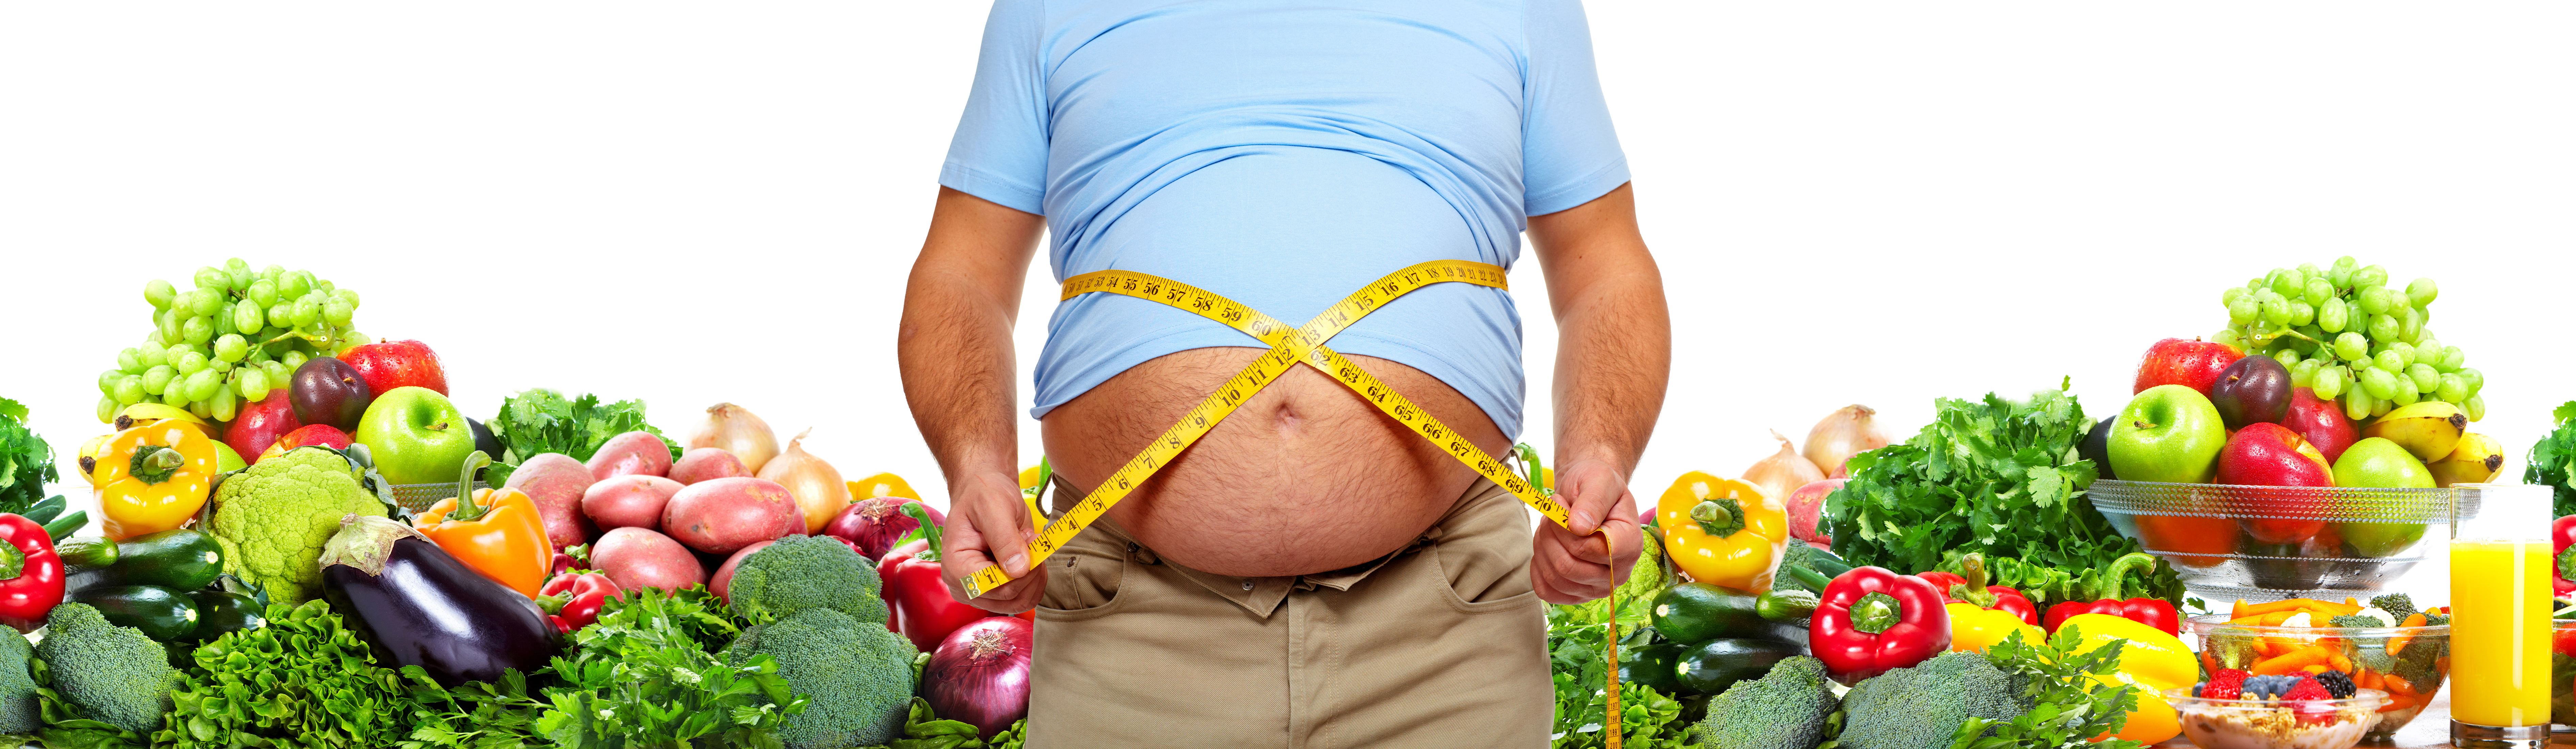 Jak dużo i szybko schudnąć? James zrzucił 45 kilogramów dzięki diecie odkwaszającej!